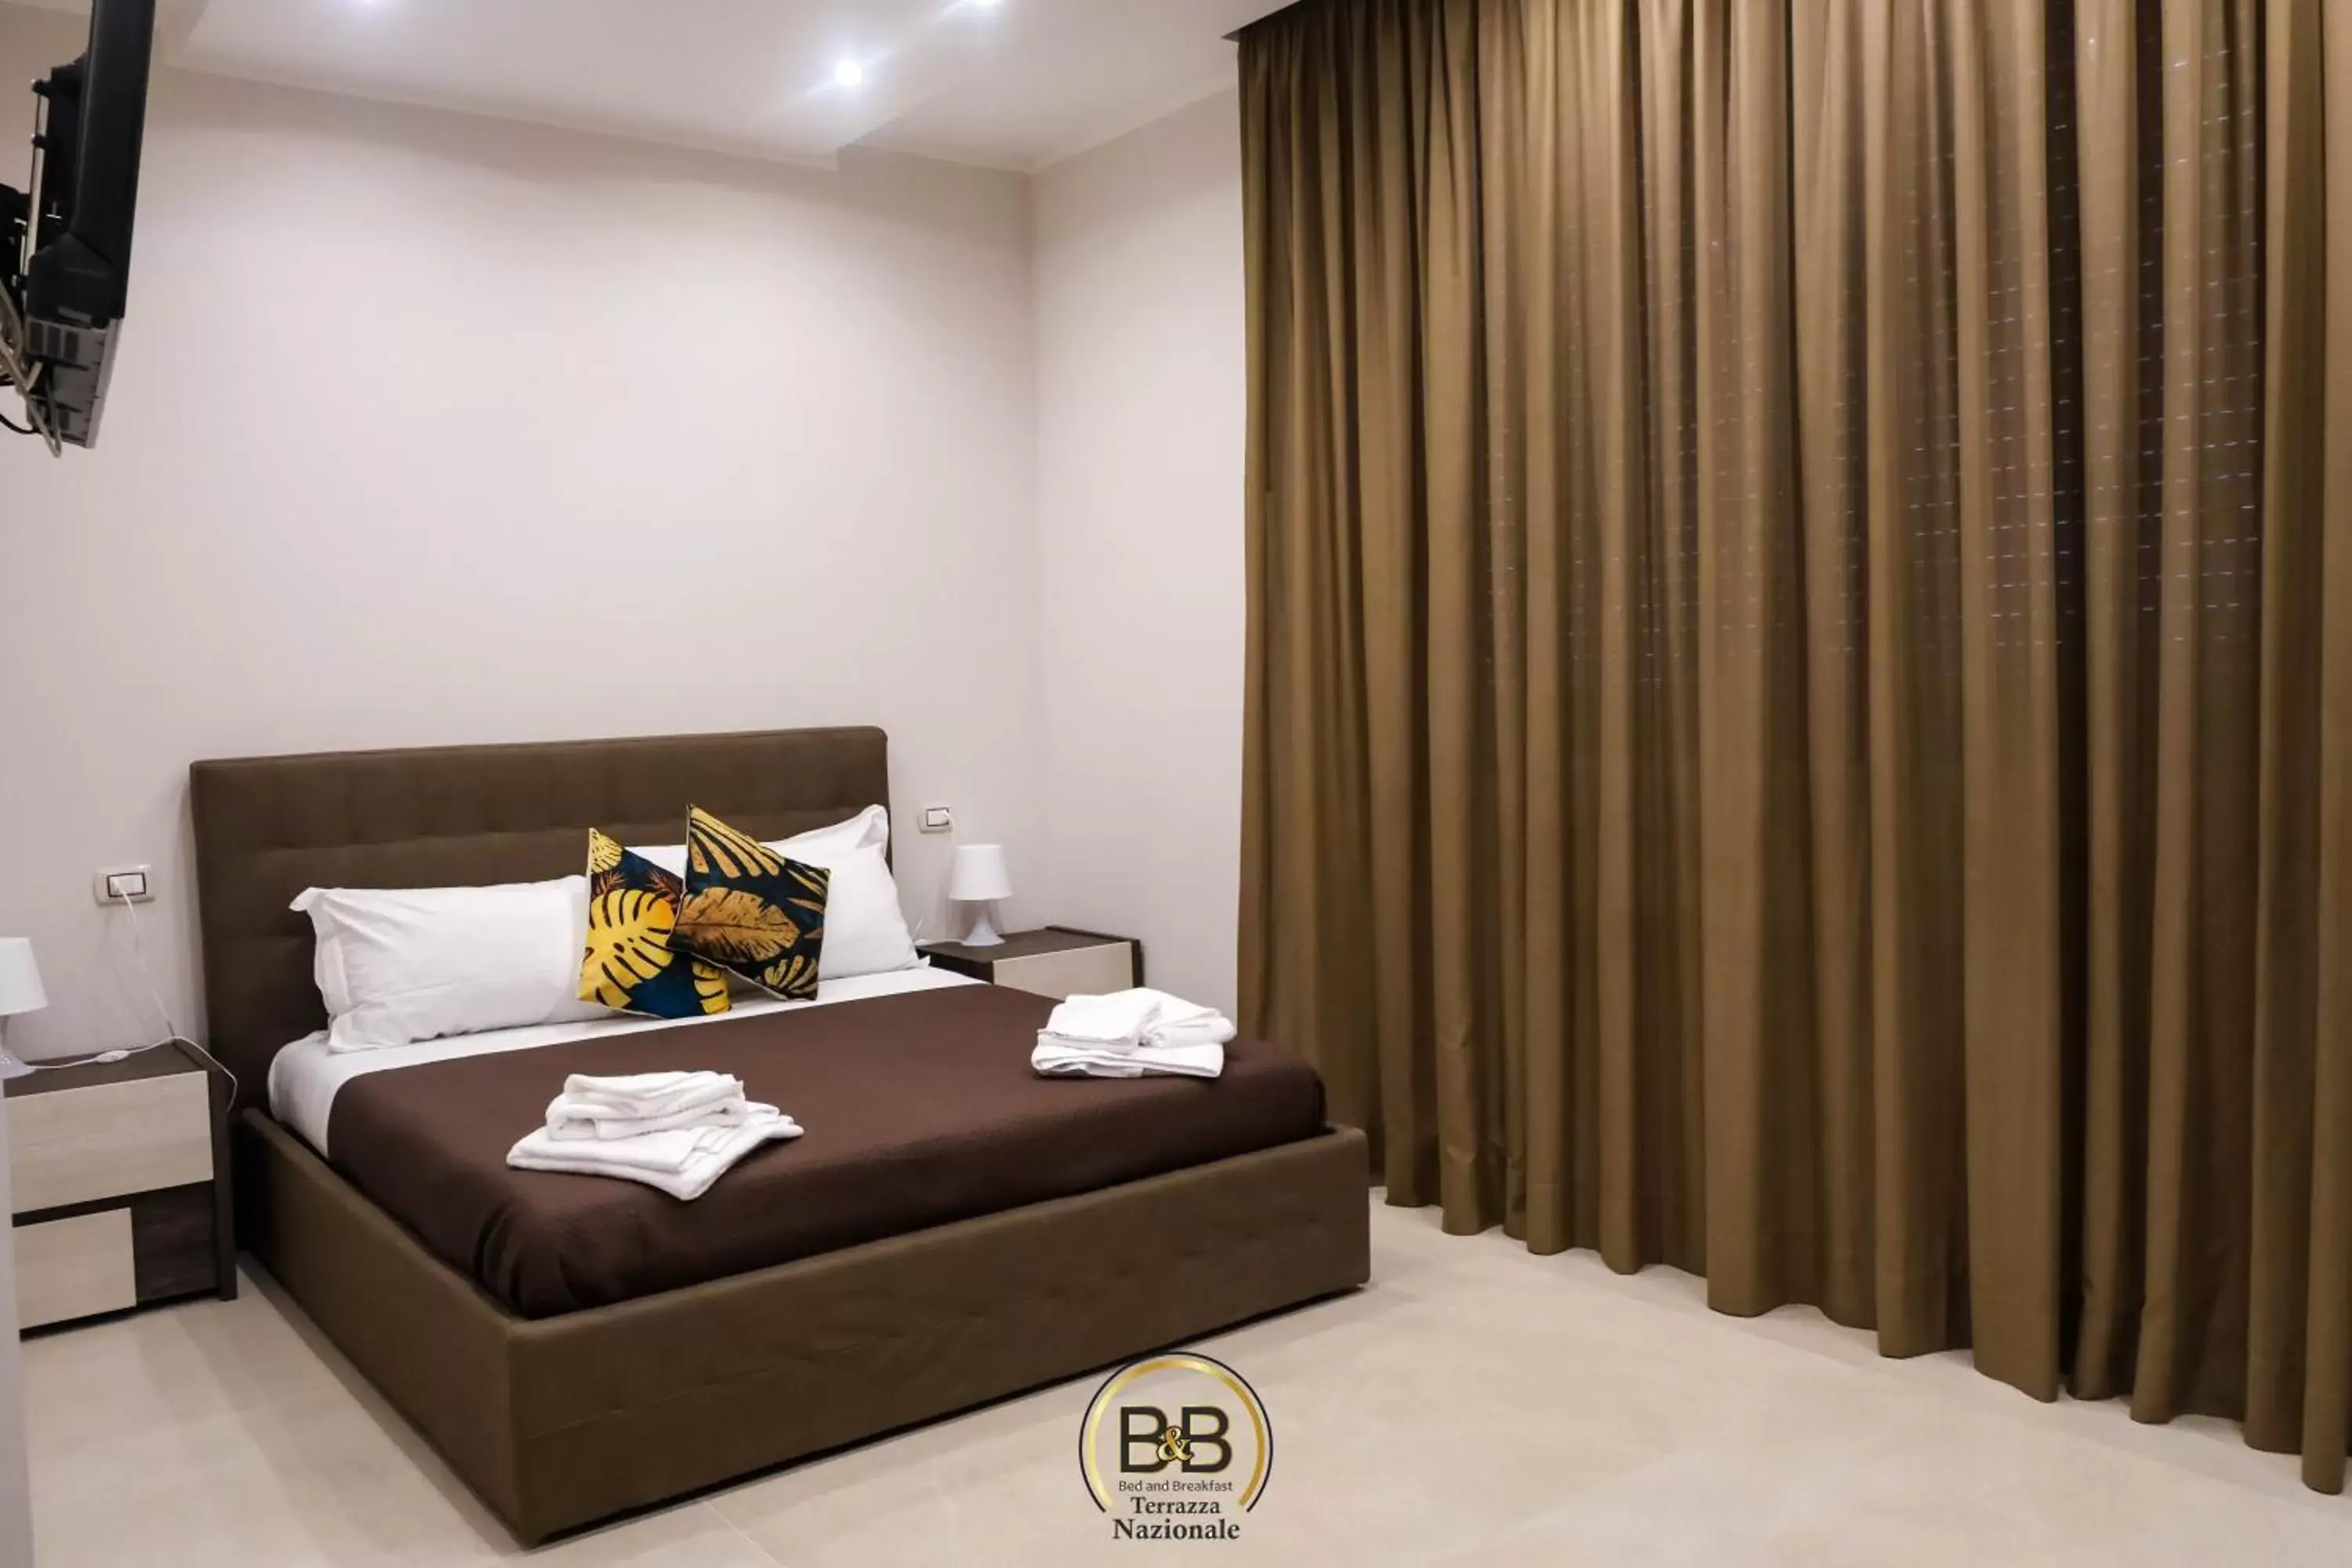 Bed in B&B Terrazza Nazionale